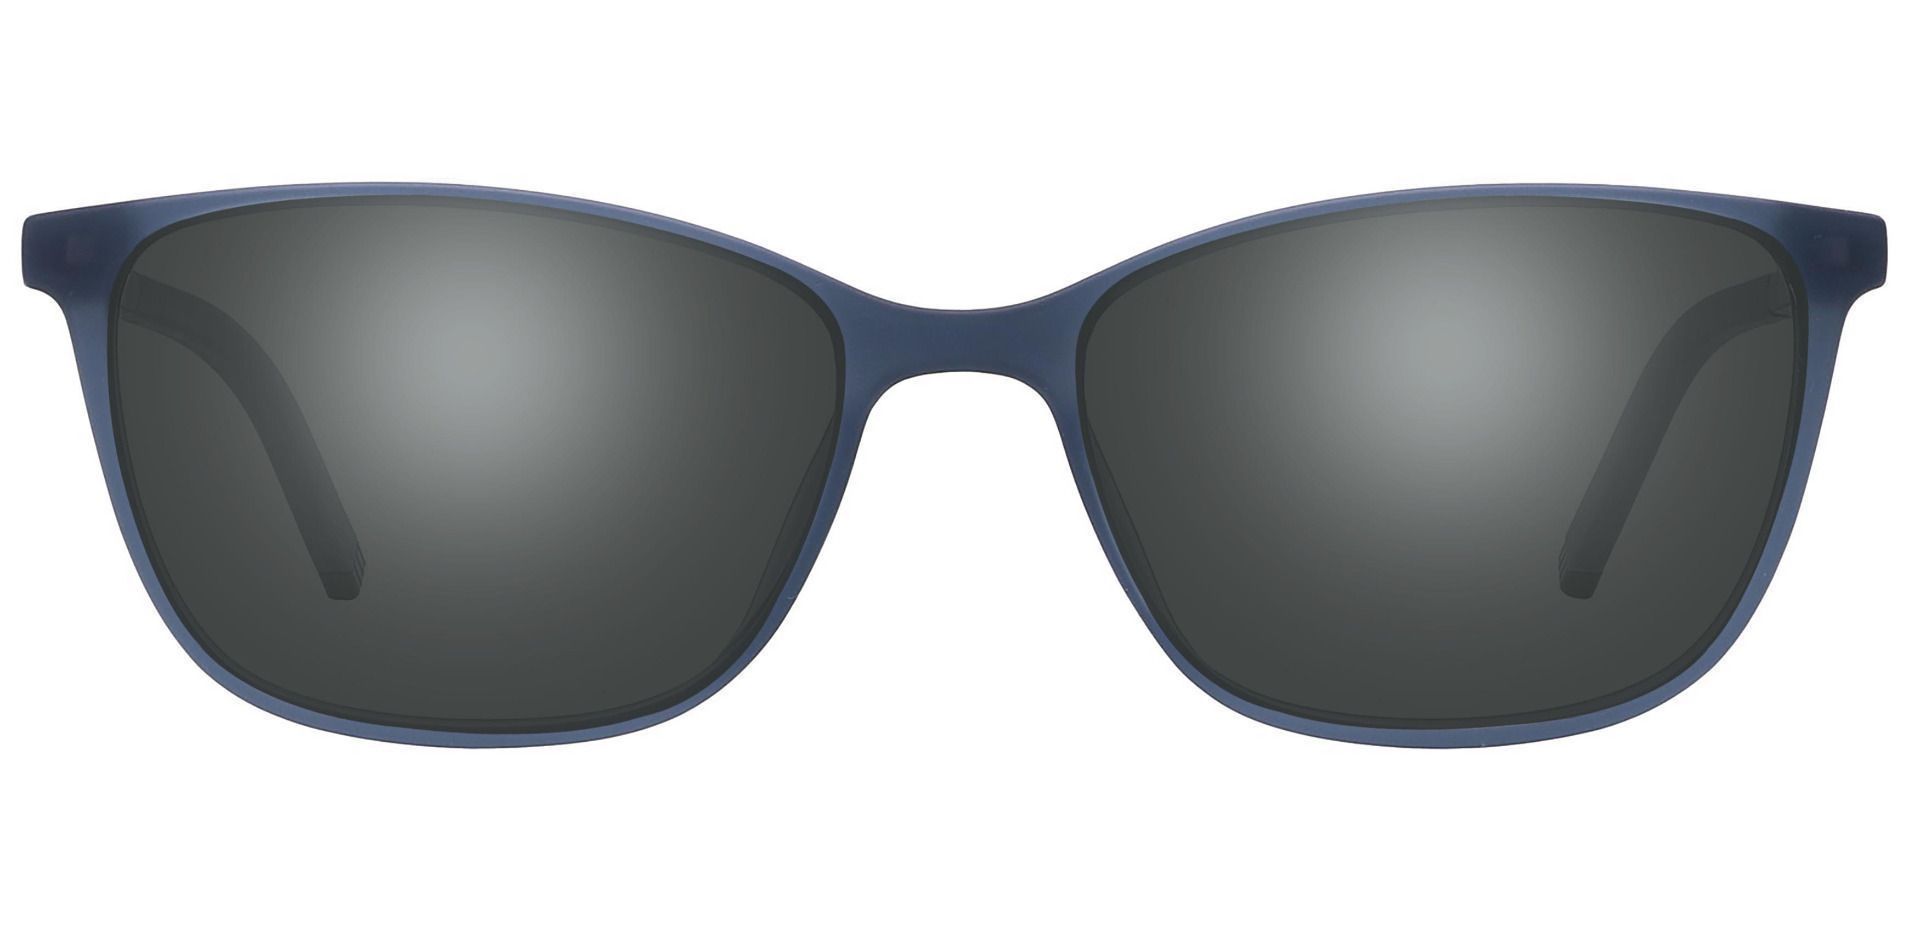 Danica Square Prescription Sunglasses - Gray Frame With Gray Lenses